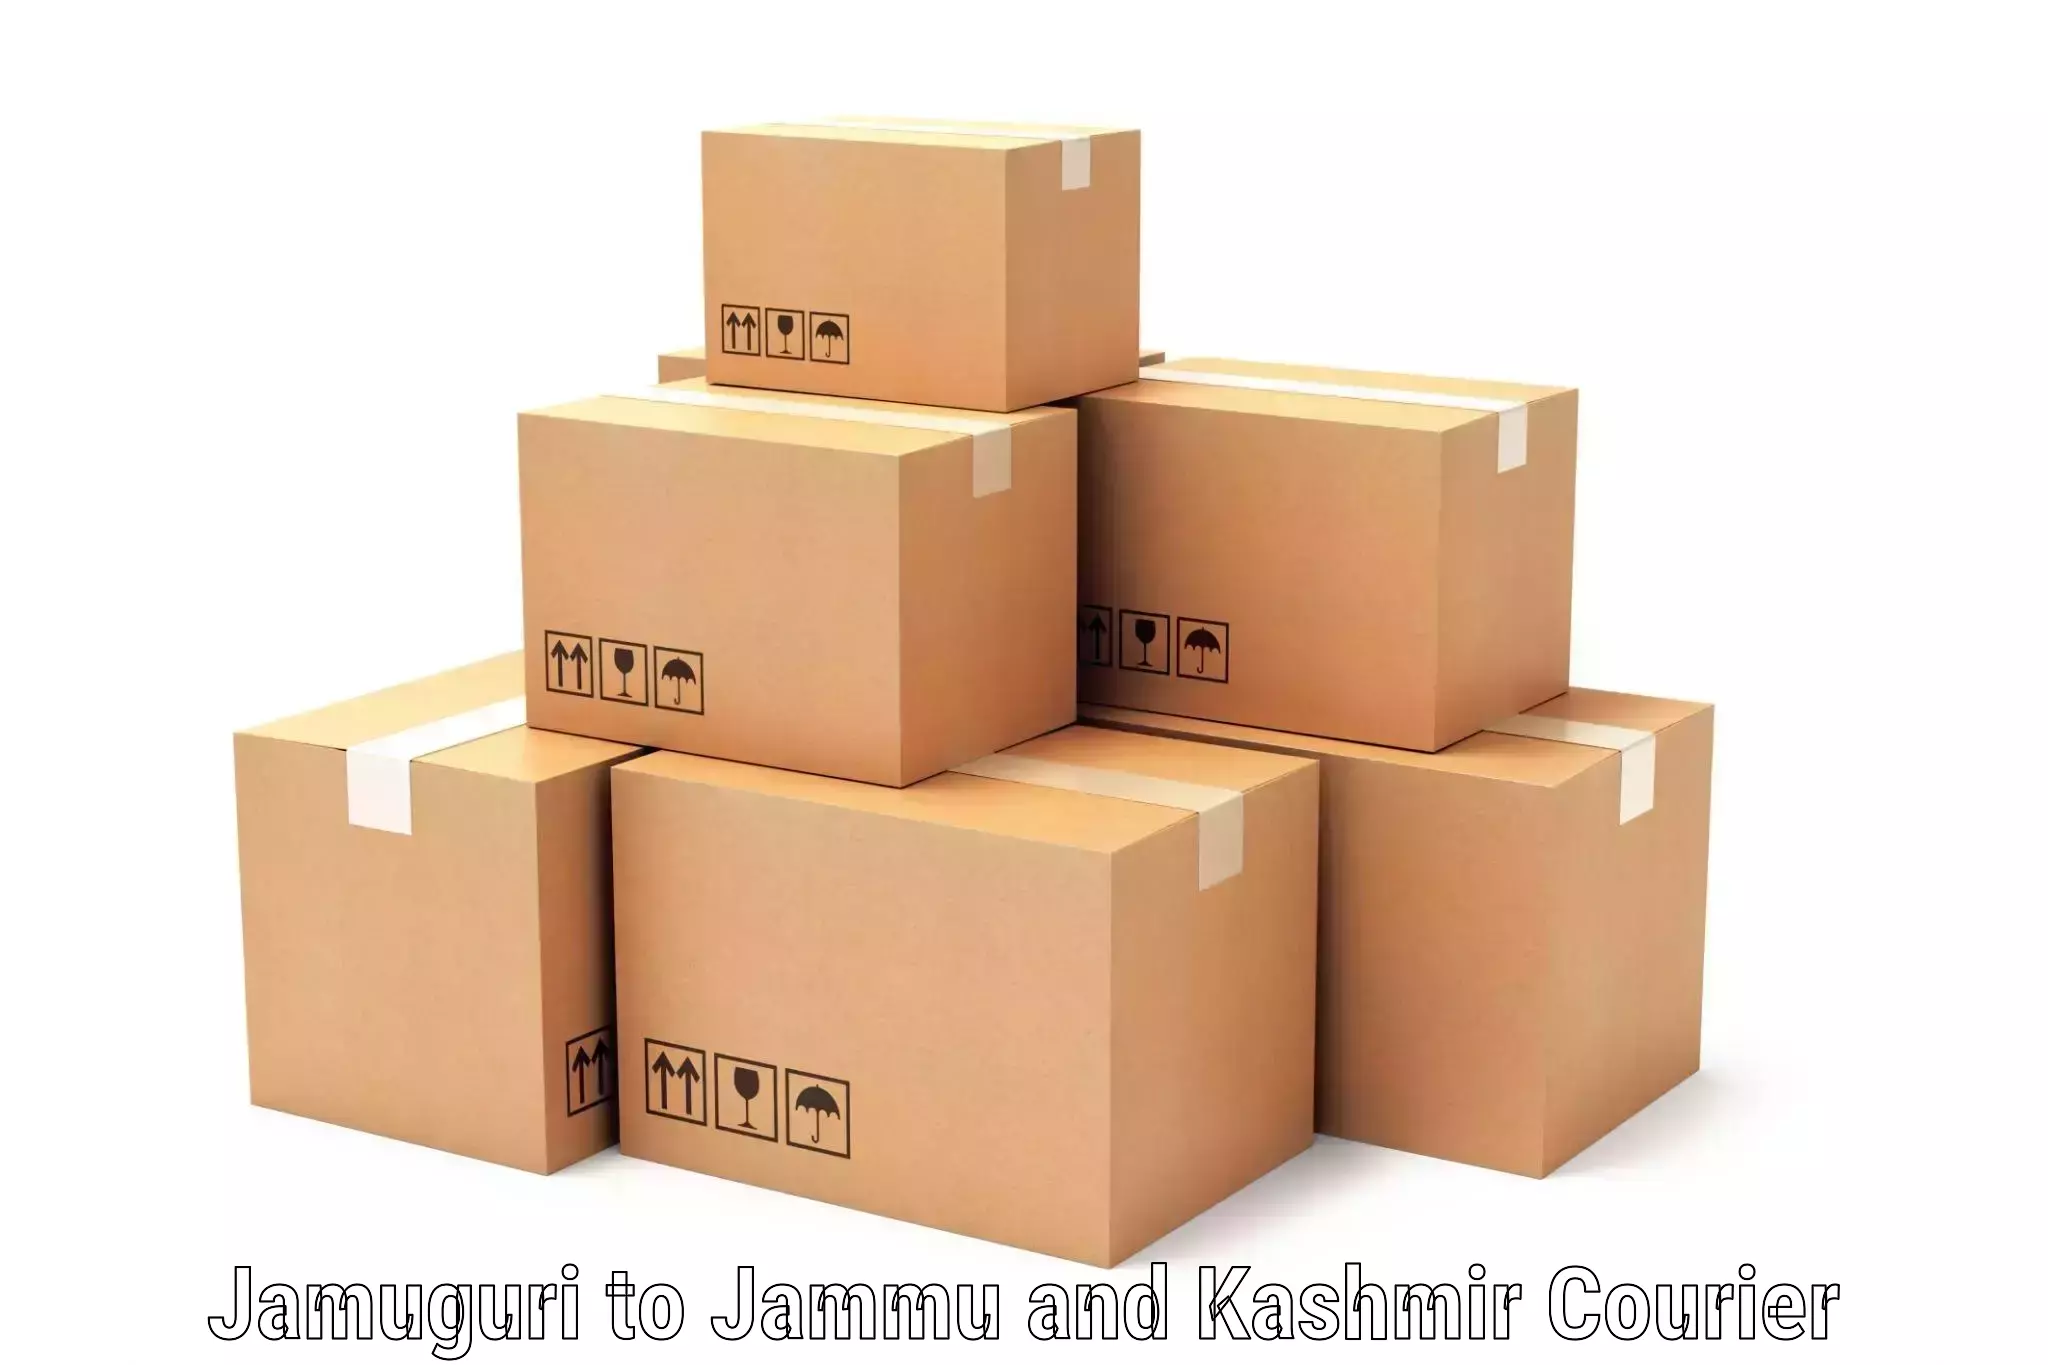 Seamless shipping experience Jamuguri to Shopian